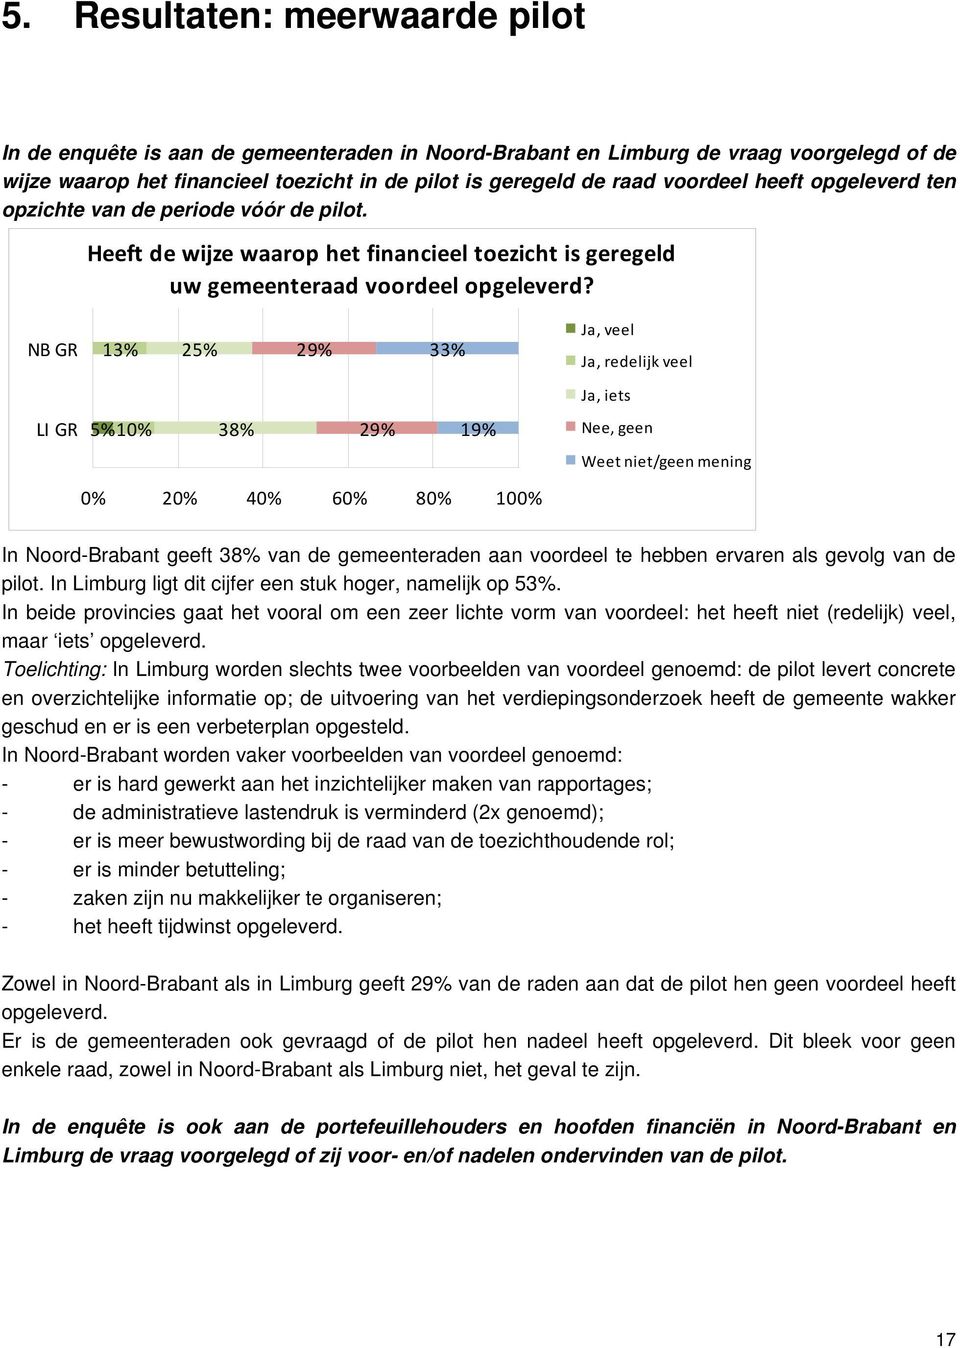 NB GR 13% 25% 33% Ja, veel Ja, redelijk veel Ja, iets LI GR 5% 38% 19% Nee, geen Weet niet/geen mening In Noord-Brabant geeft 38% van de gemeenteraden aan voordeel te hebben ervaren als gevolg van de